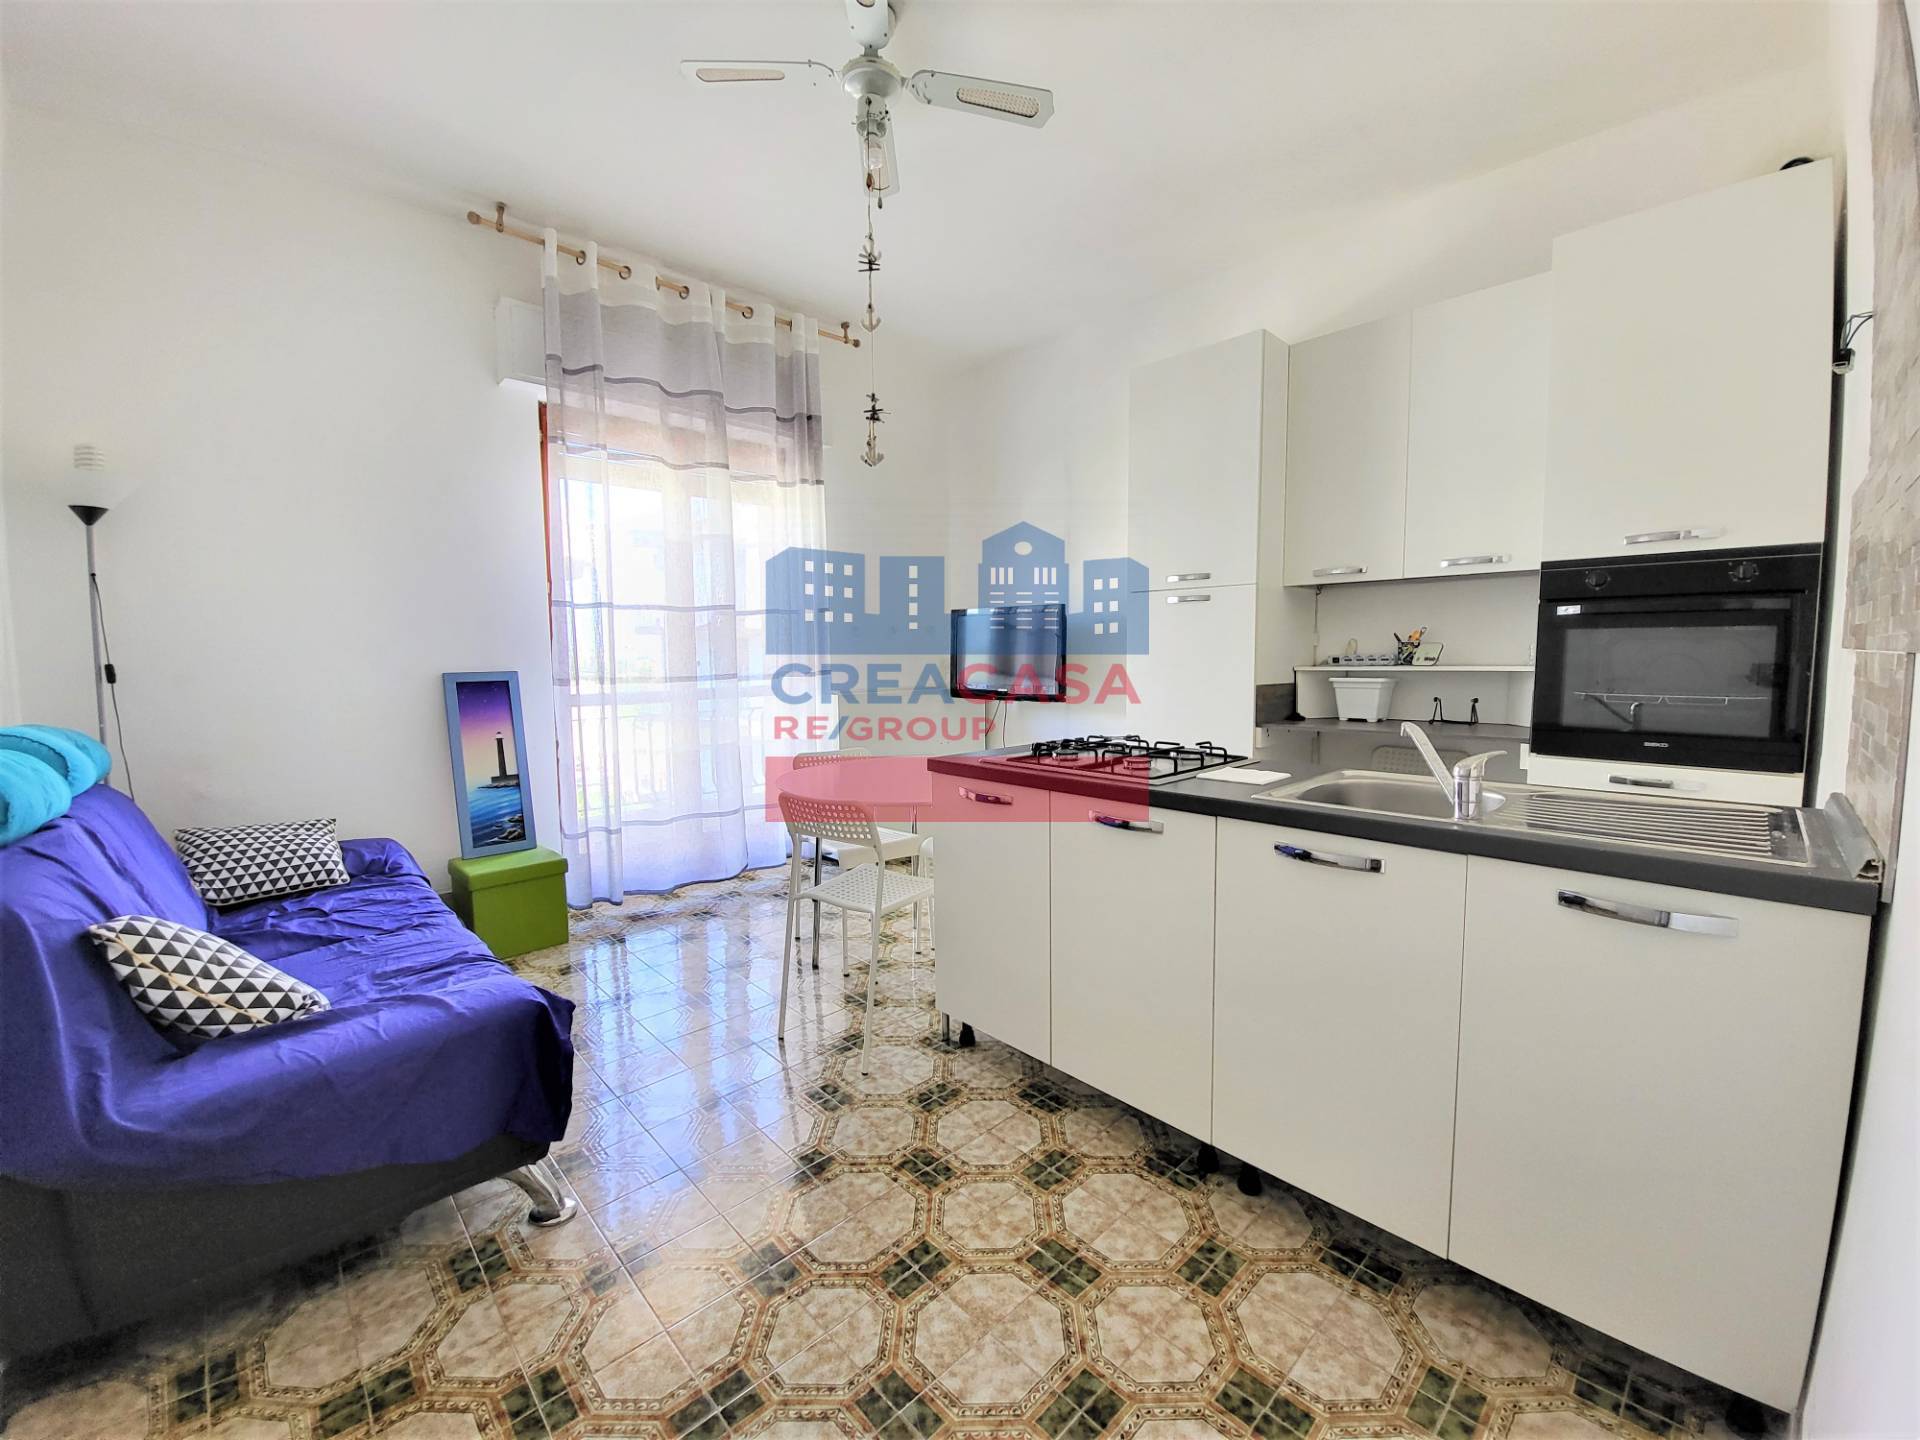 Appartamento in vendita a Riposto, 6 locali, prezzo € 80.000 | PortaleAgenzieImmobiliari.it